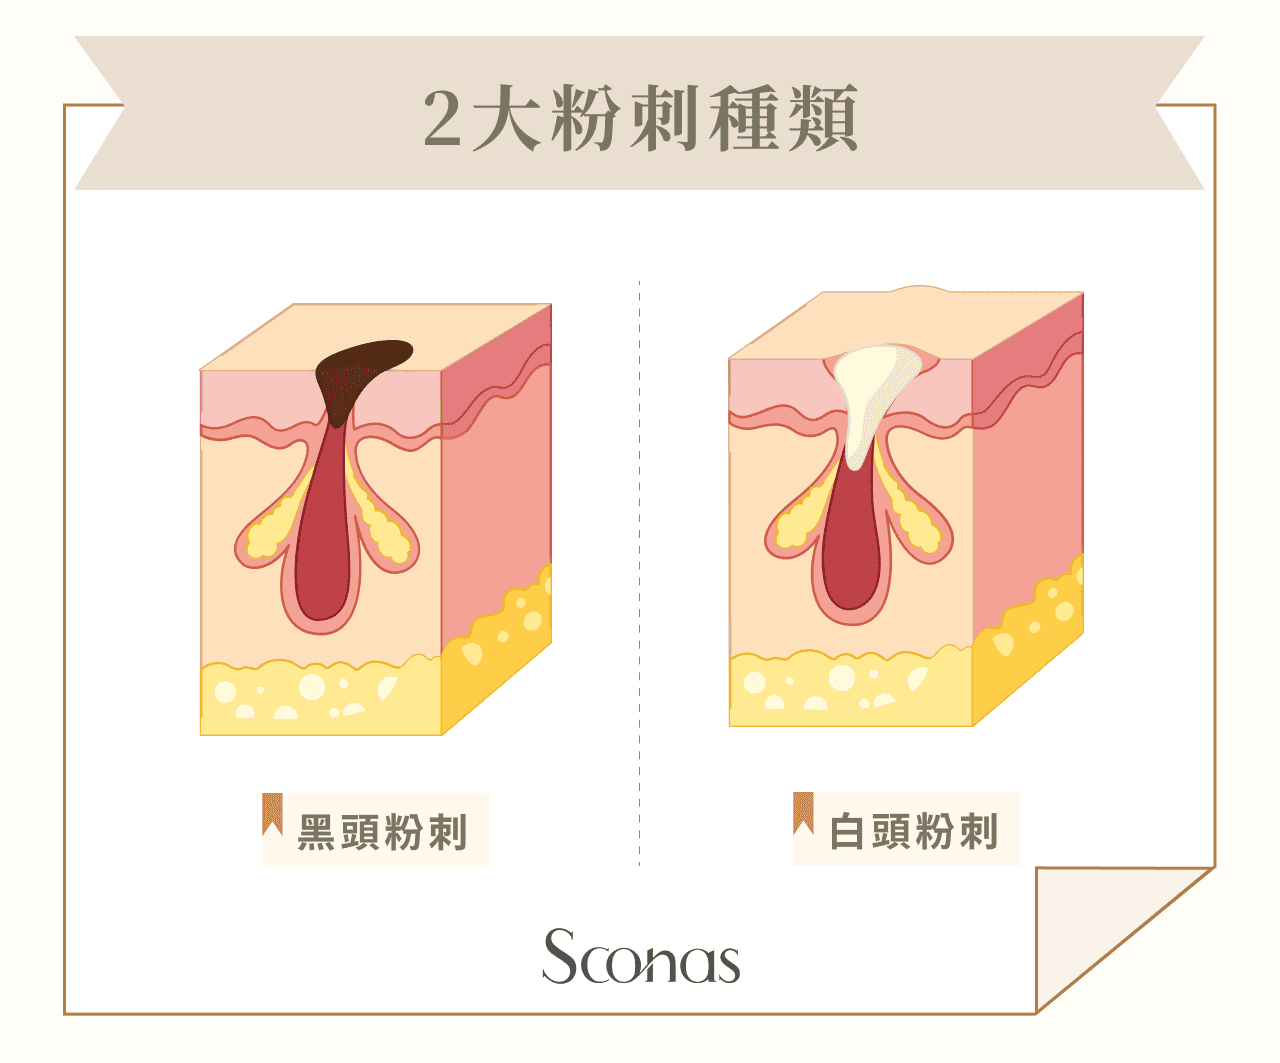 2大粉刺種類